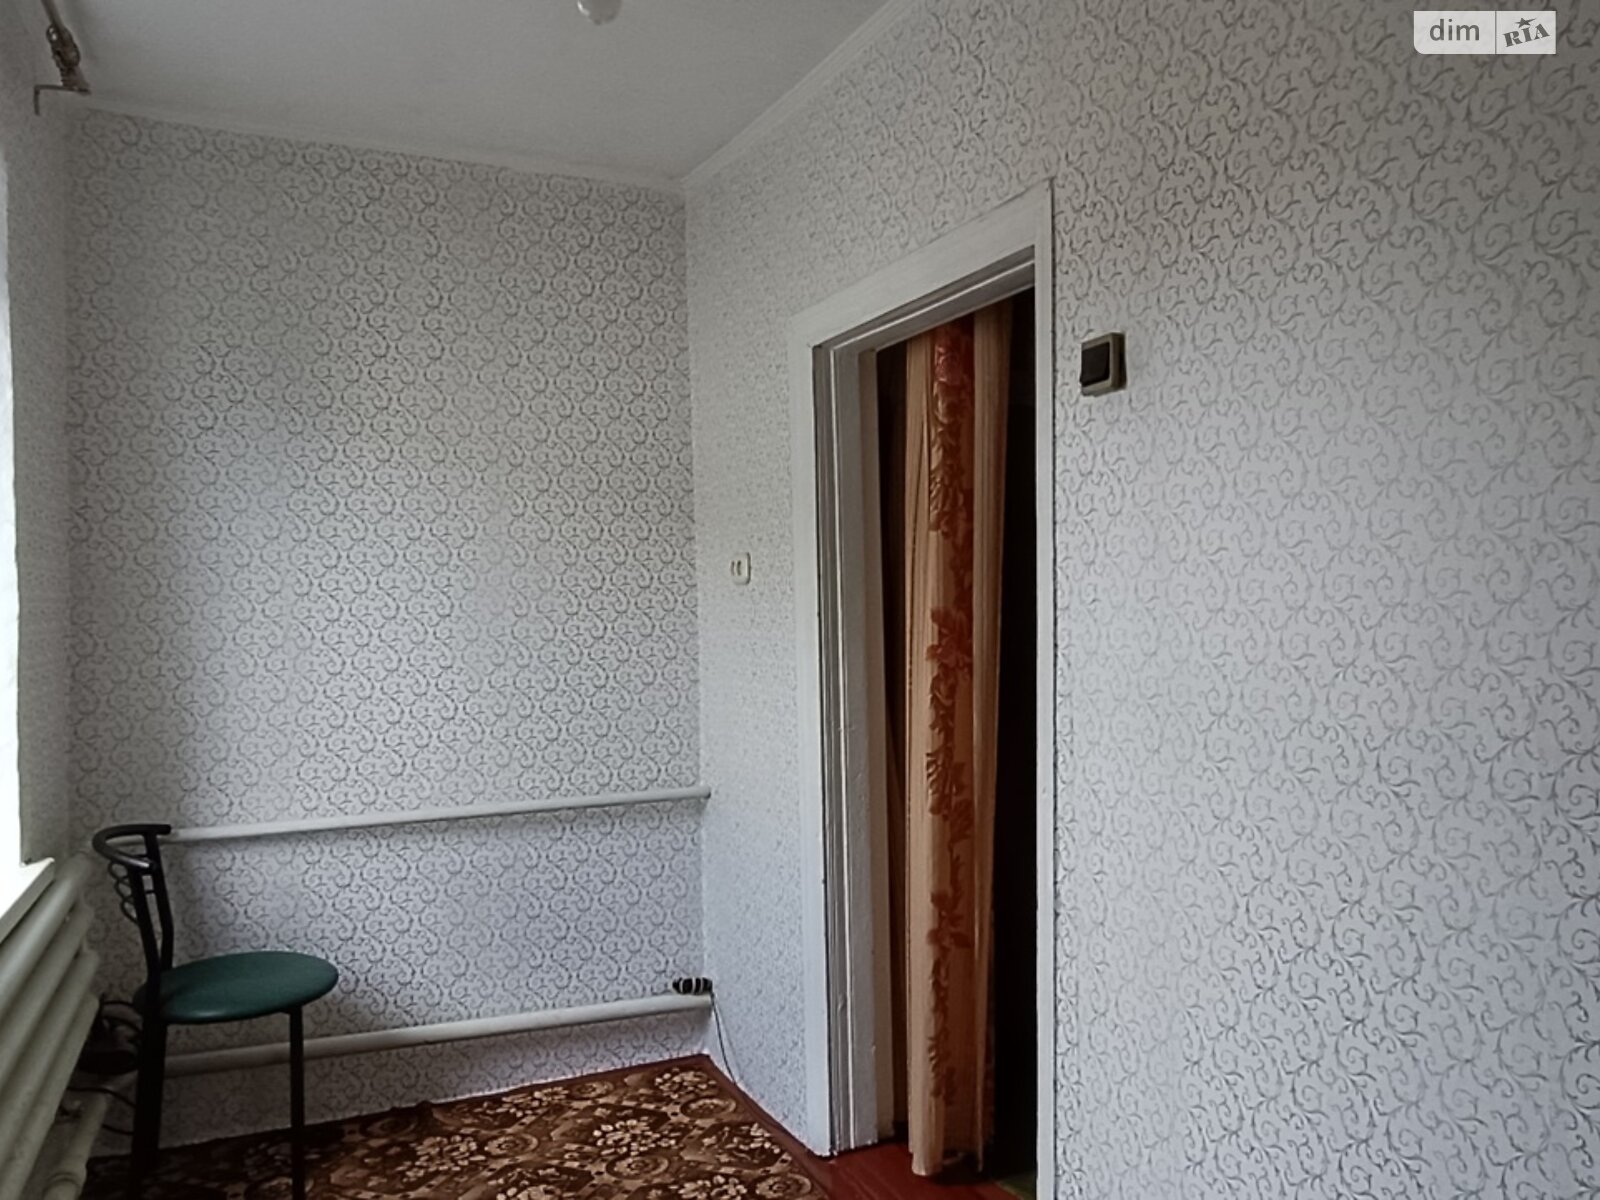 Продажа части дома в Днепре, улица Киргизская, район Сухачевка, 2 комнаты фото 1